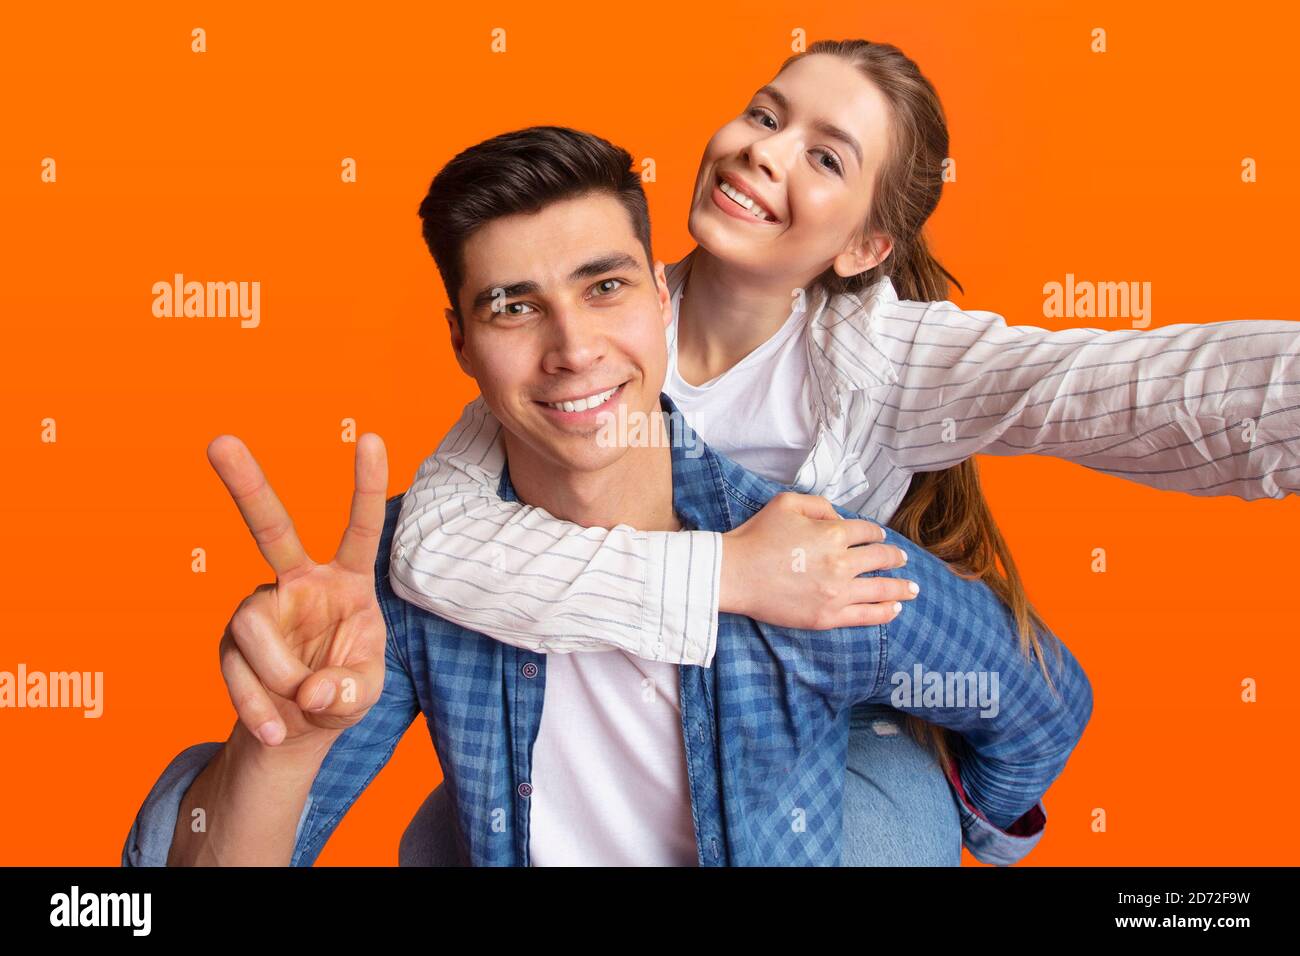 Selfie insieme, emozioni di gioia e stile di vita hipster moderno Foto Stock